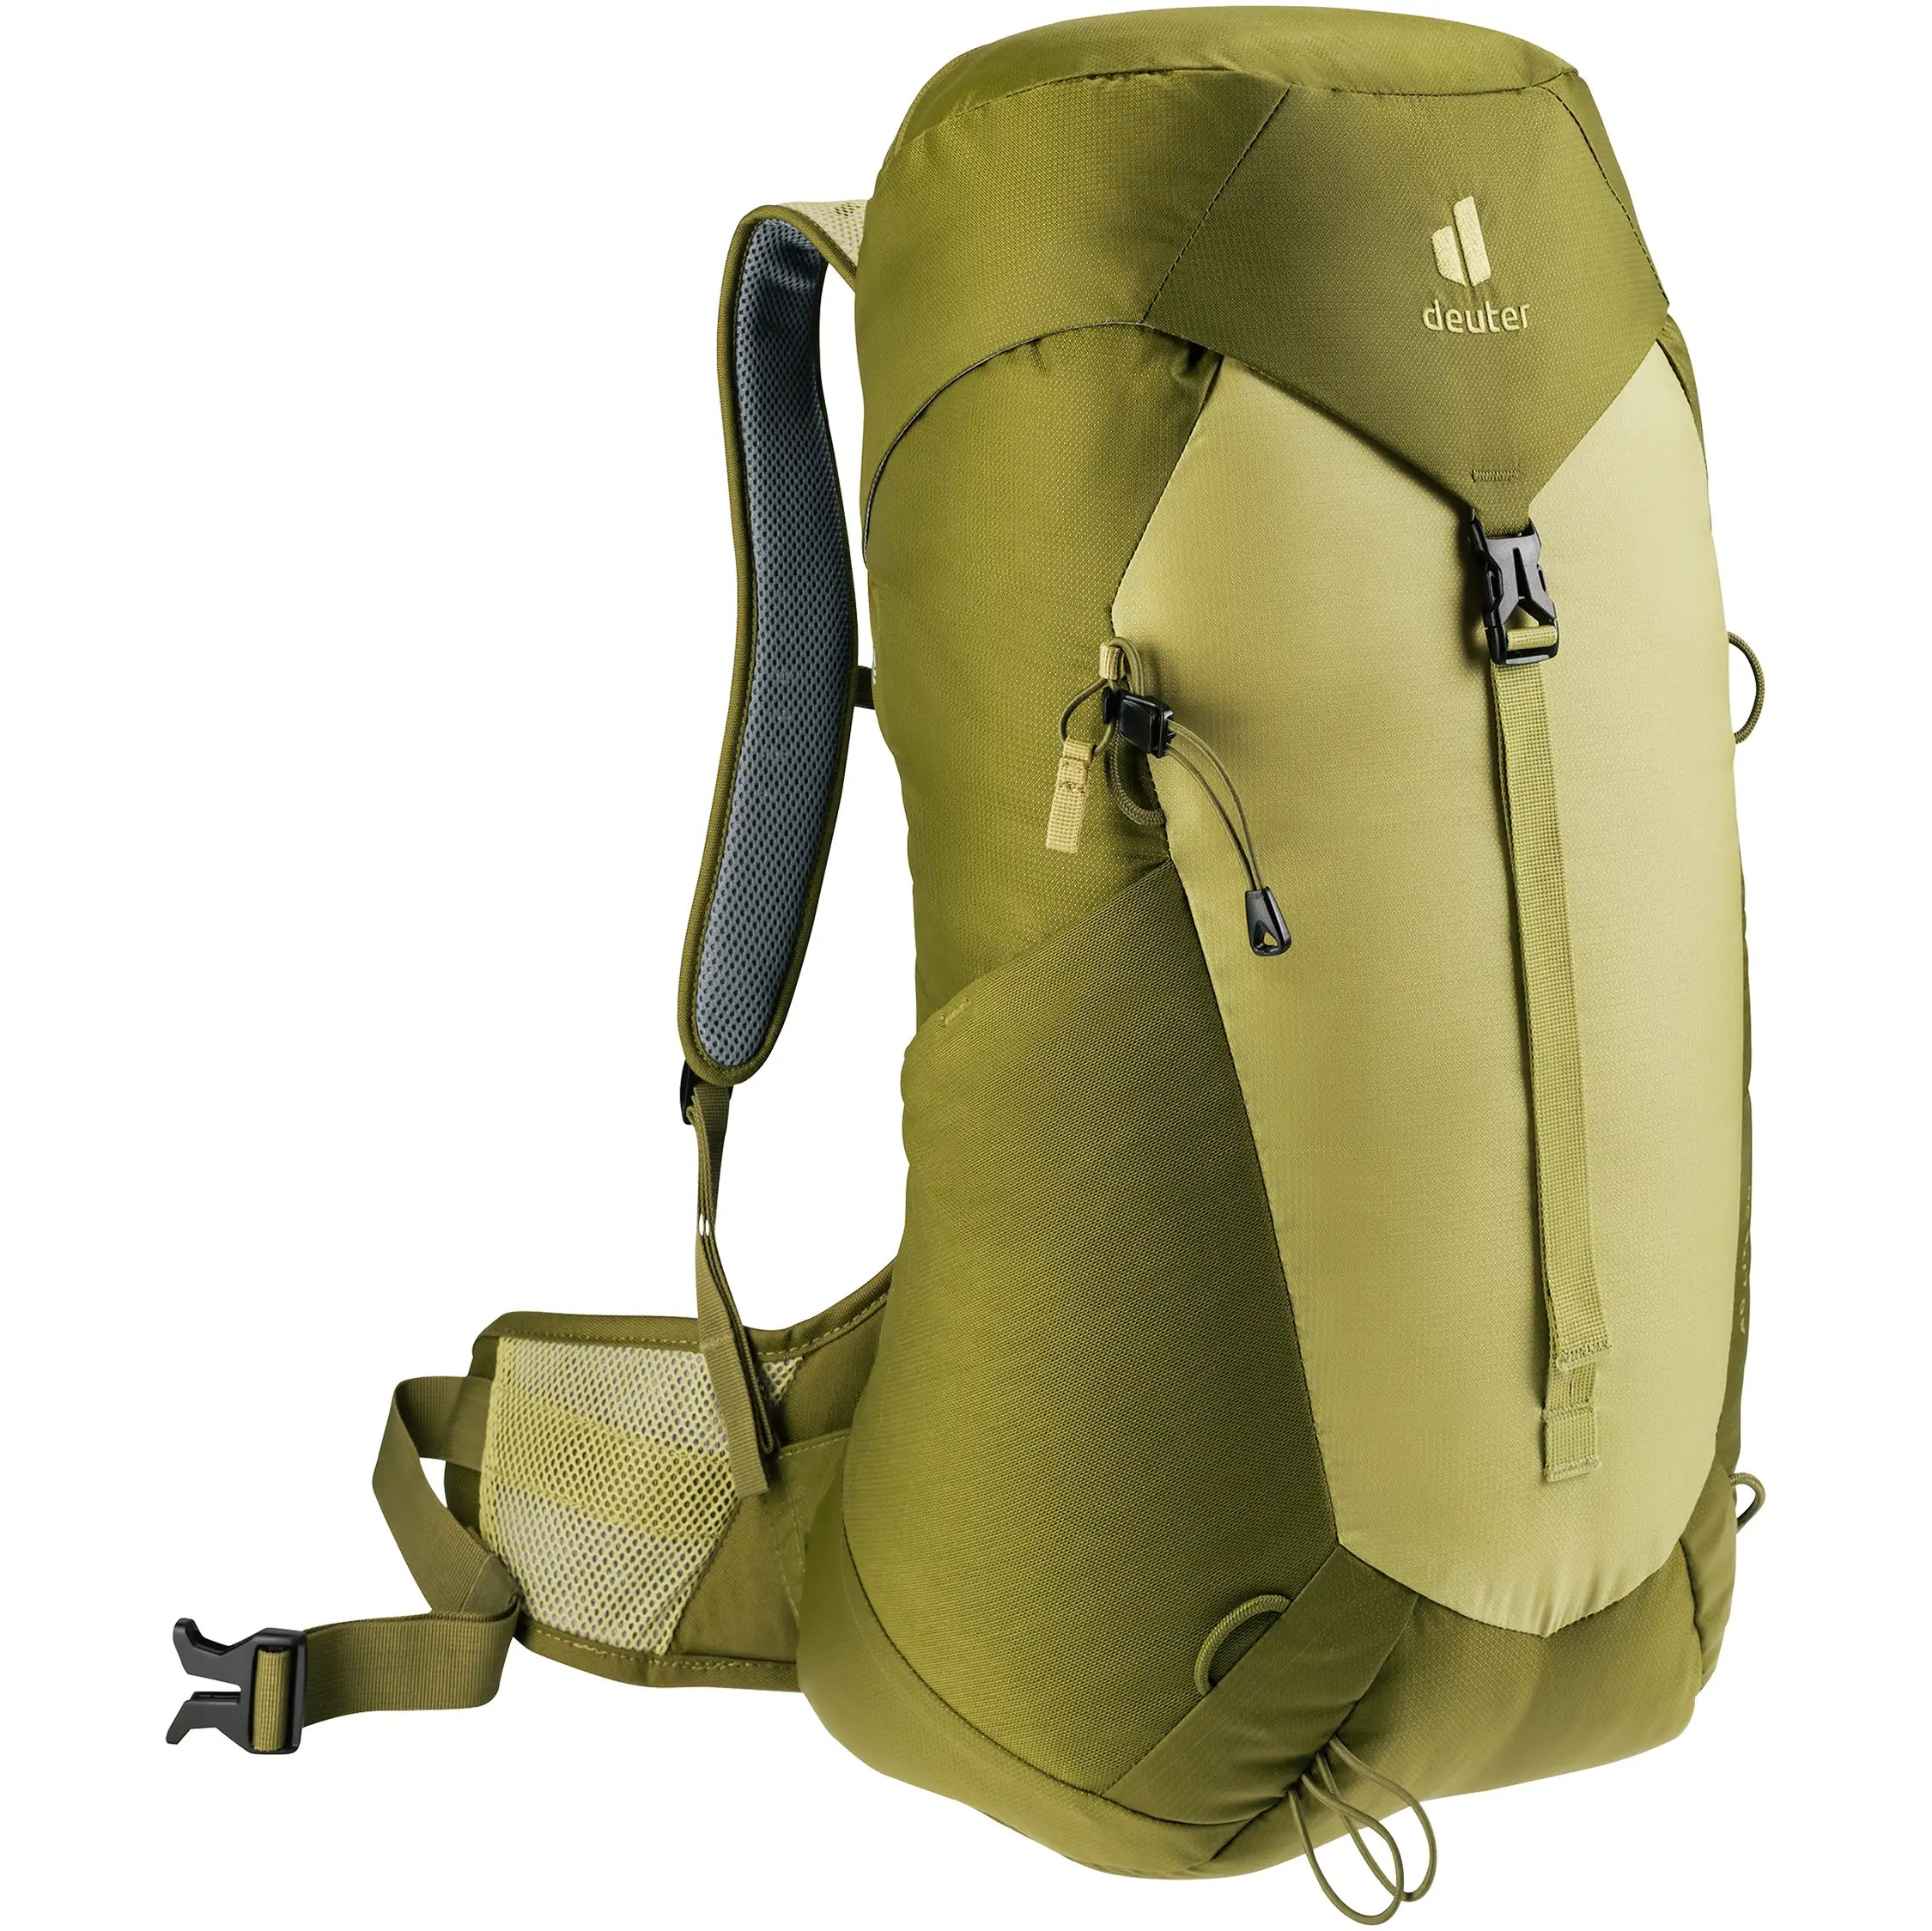 Deuter Travel AC Lite 30 hiking backpack 58 cm - Linden-Cactus